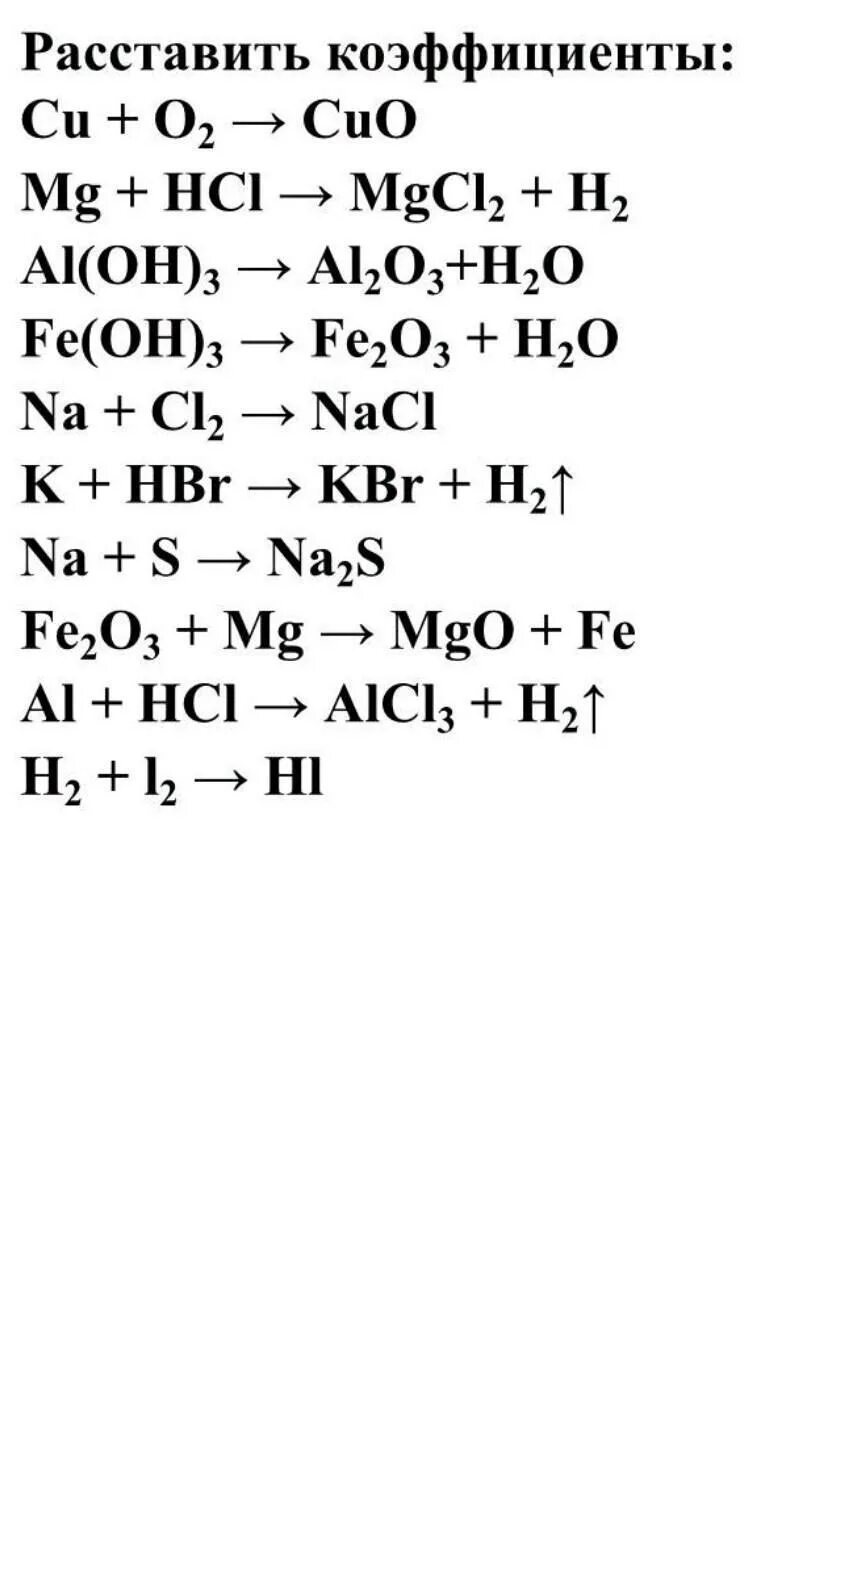 Задания на реакции соединения. Химия 8 класс уравнивание химических реакций. Химические уравнения химия 8 класс коэффициенты. Уравнения реакций химия 8 класс. Химия 8 класс расставить коэффициенты в уравнениях реакций.